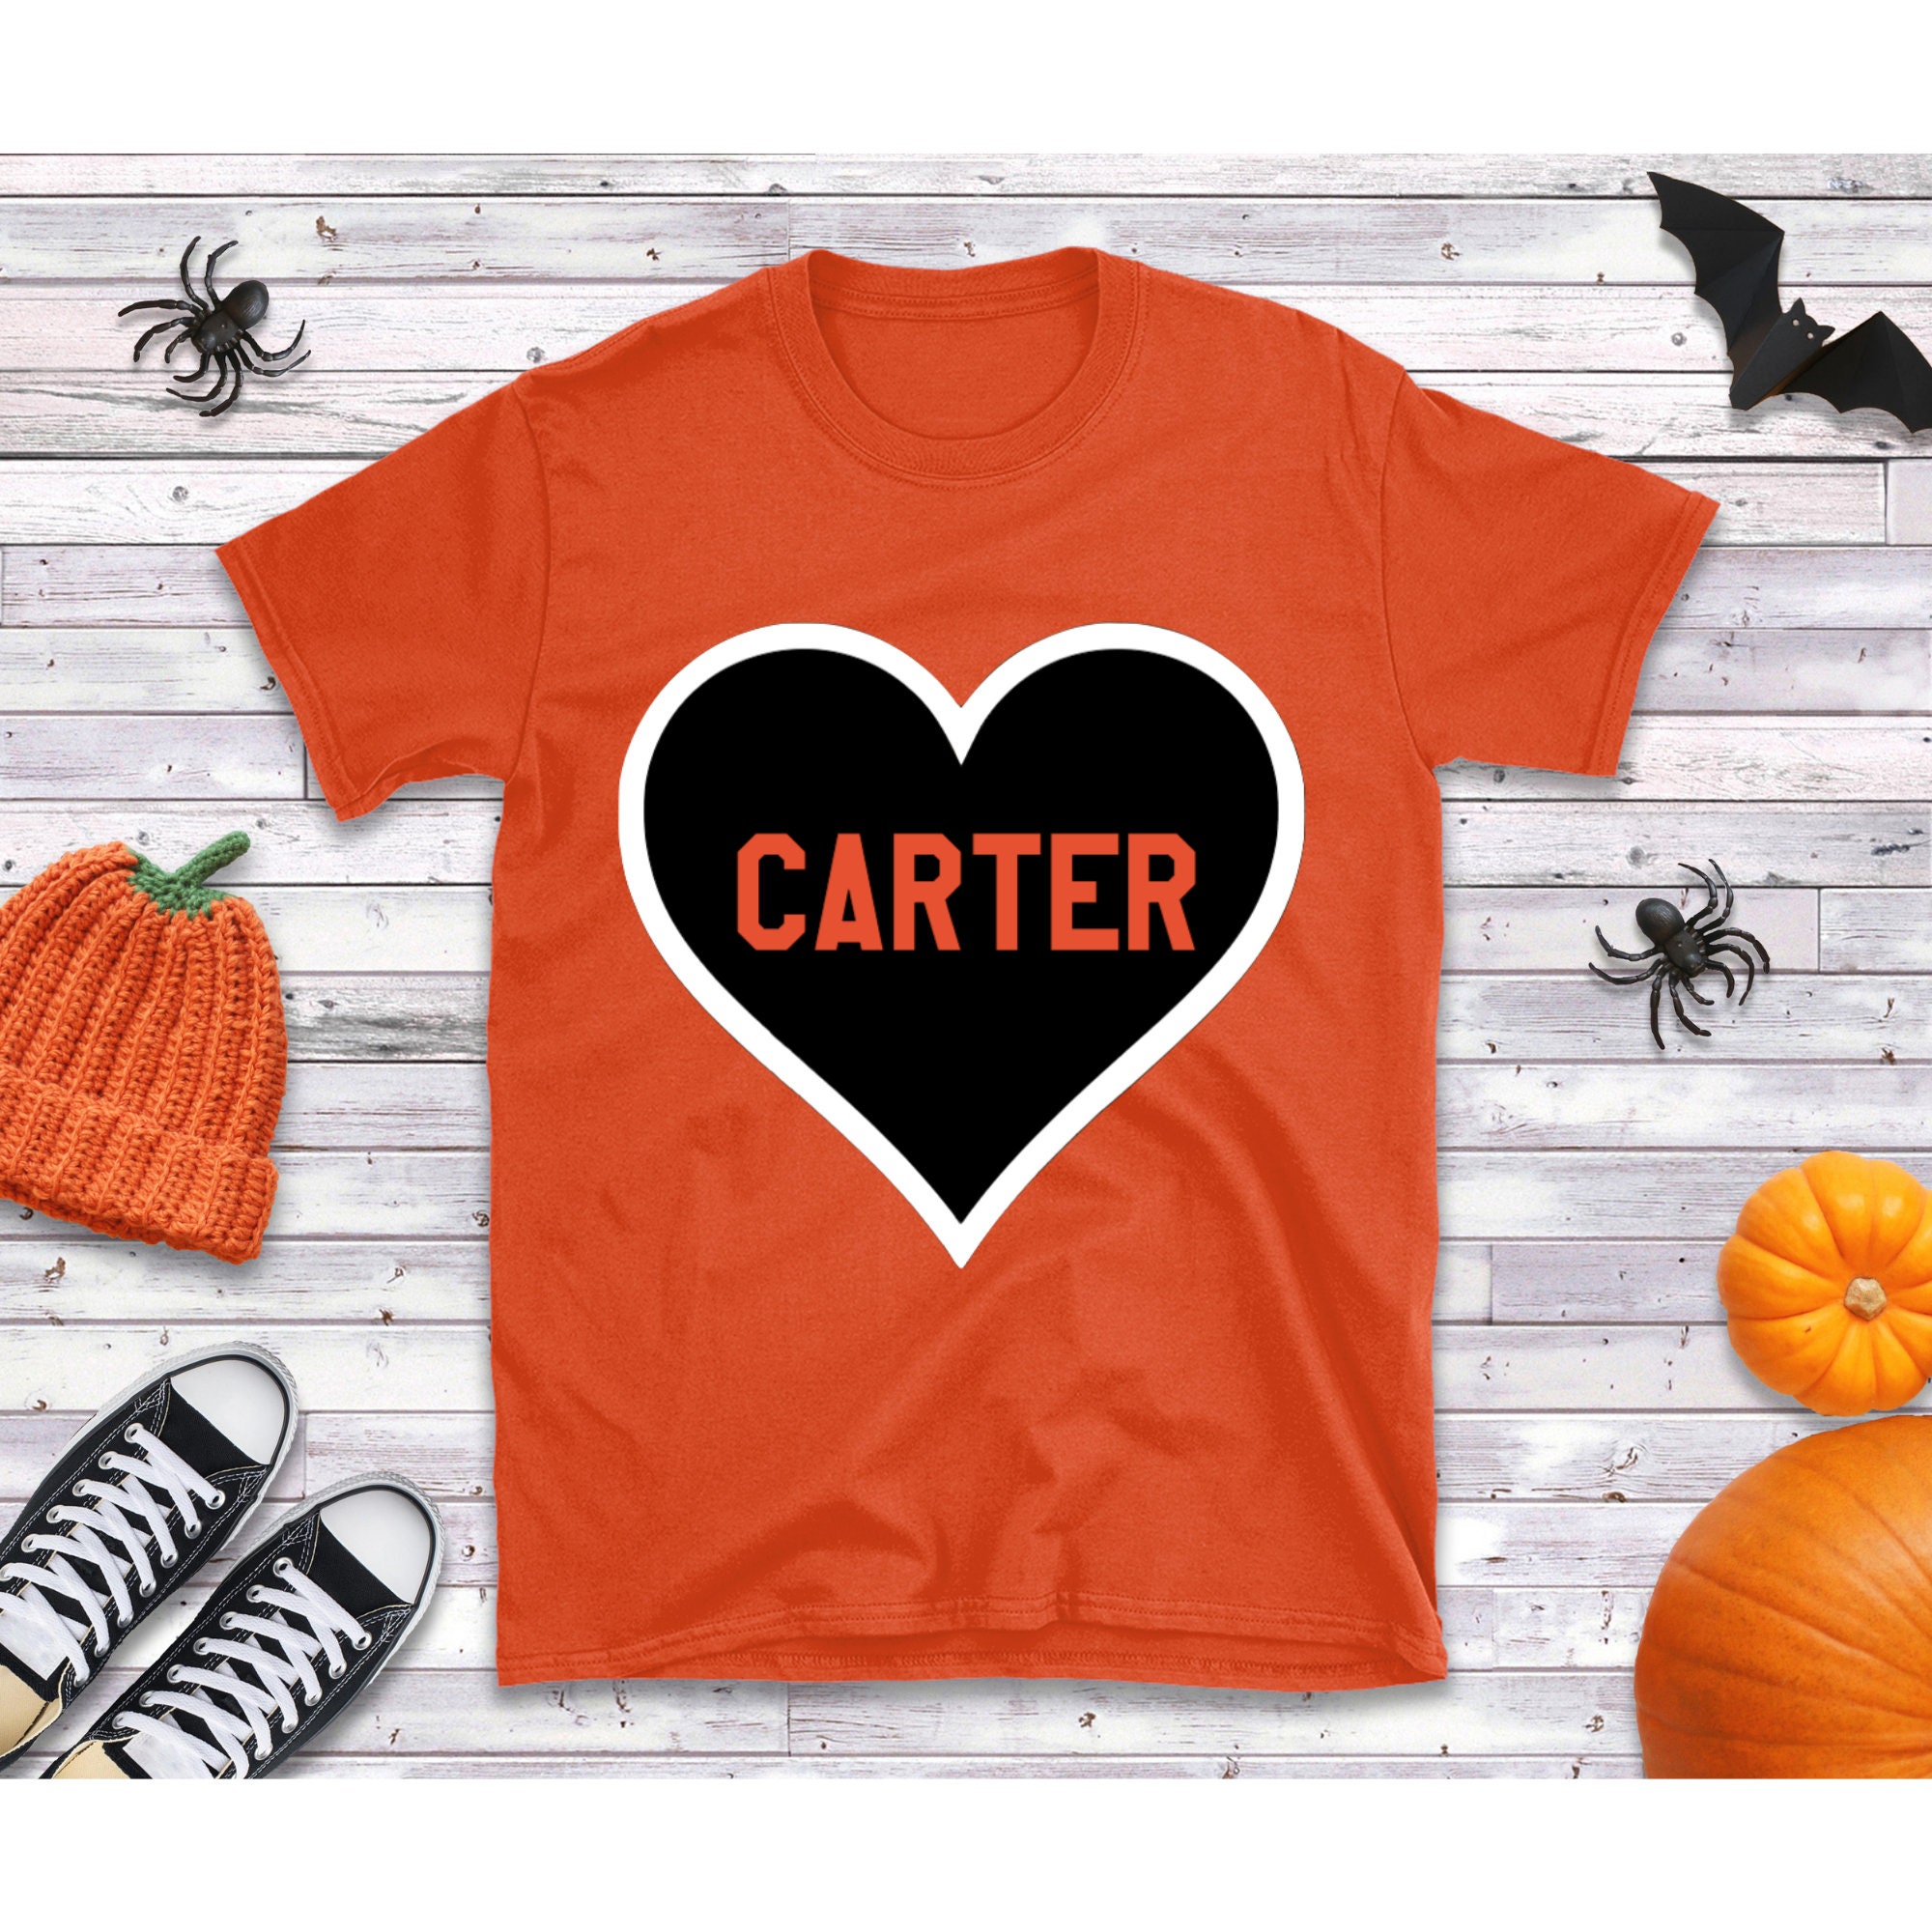 Carter Hart Sweatshirts & Hoodies for Sale